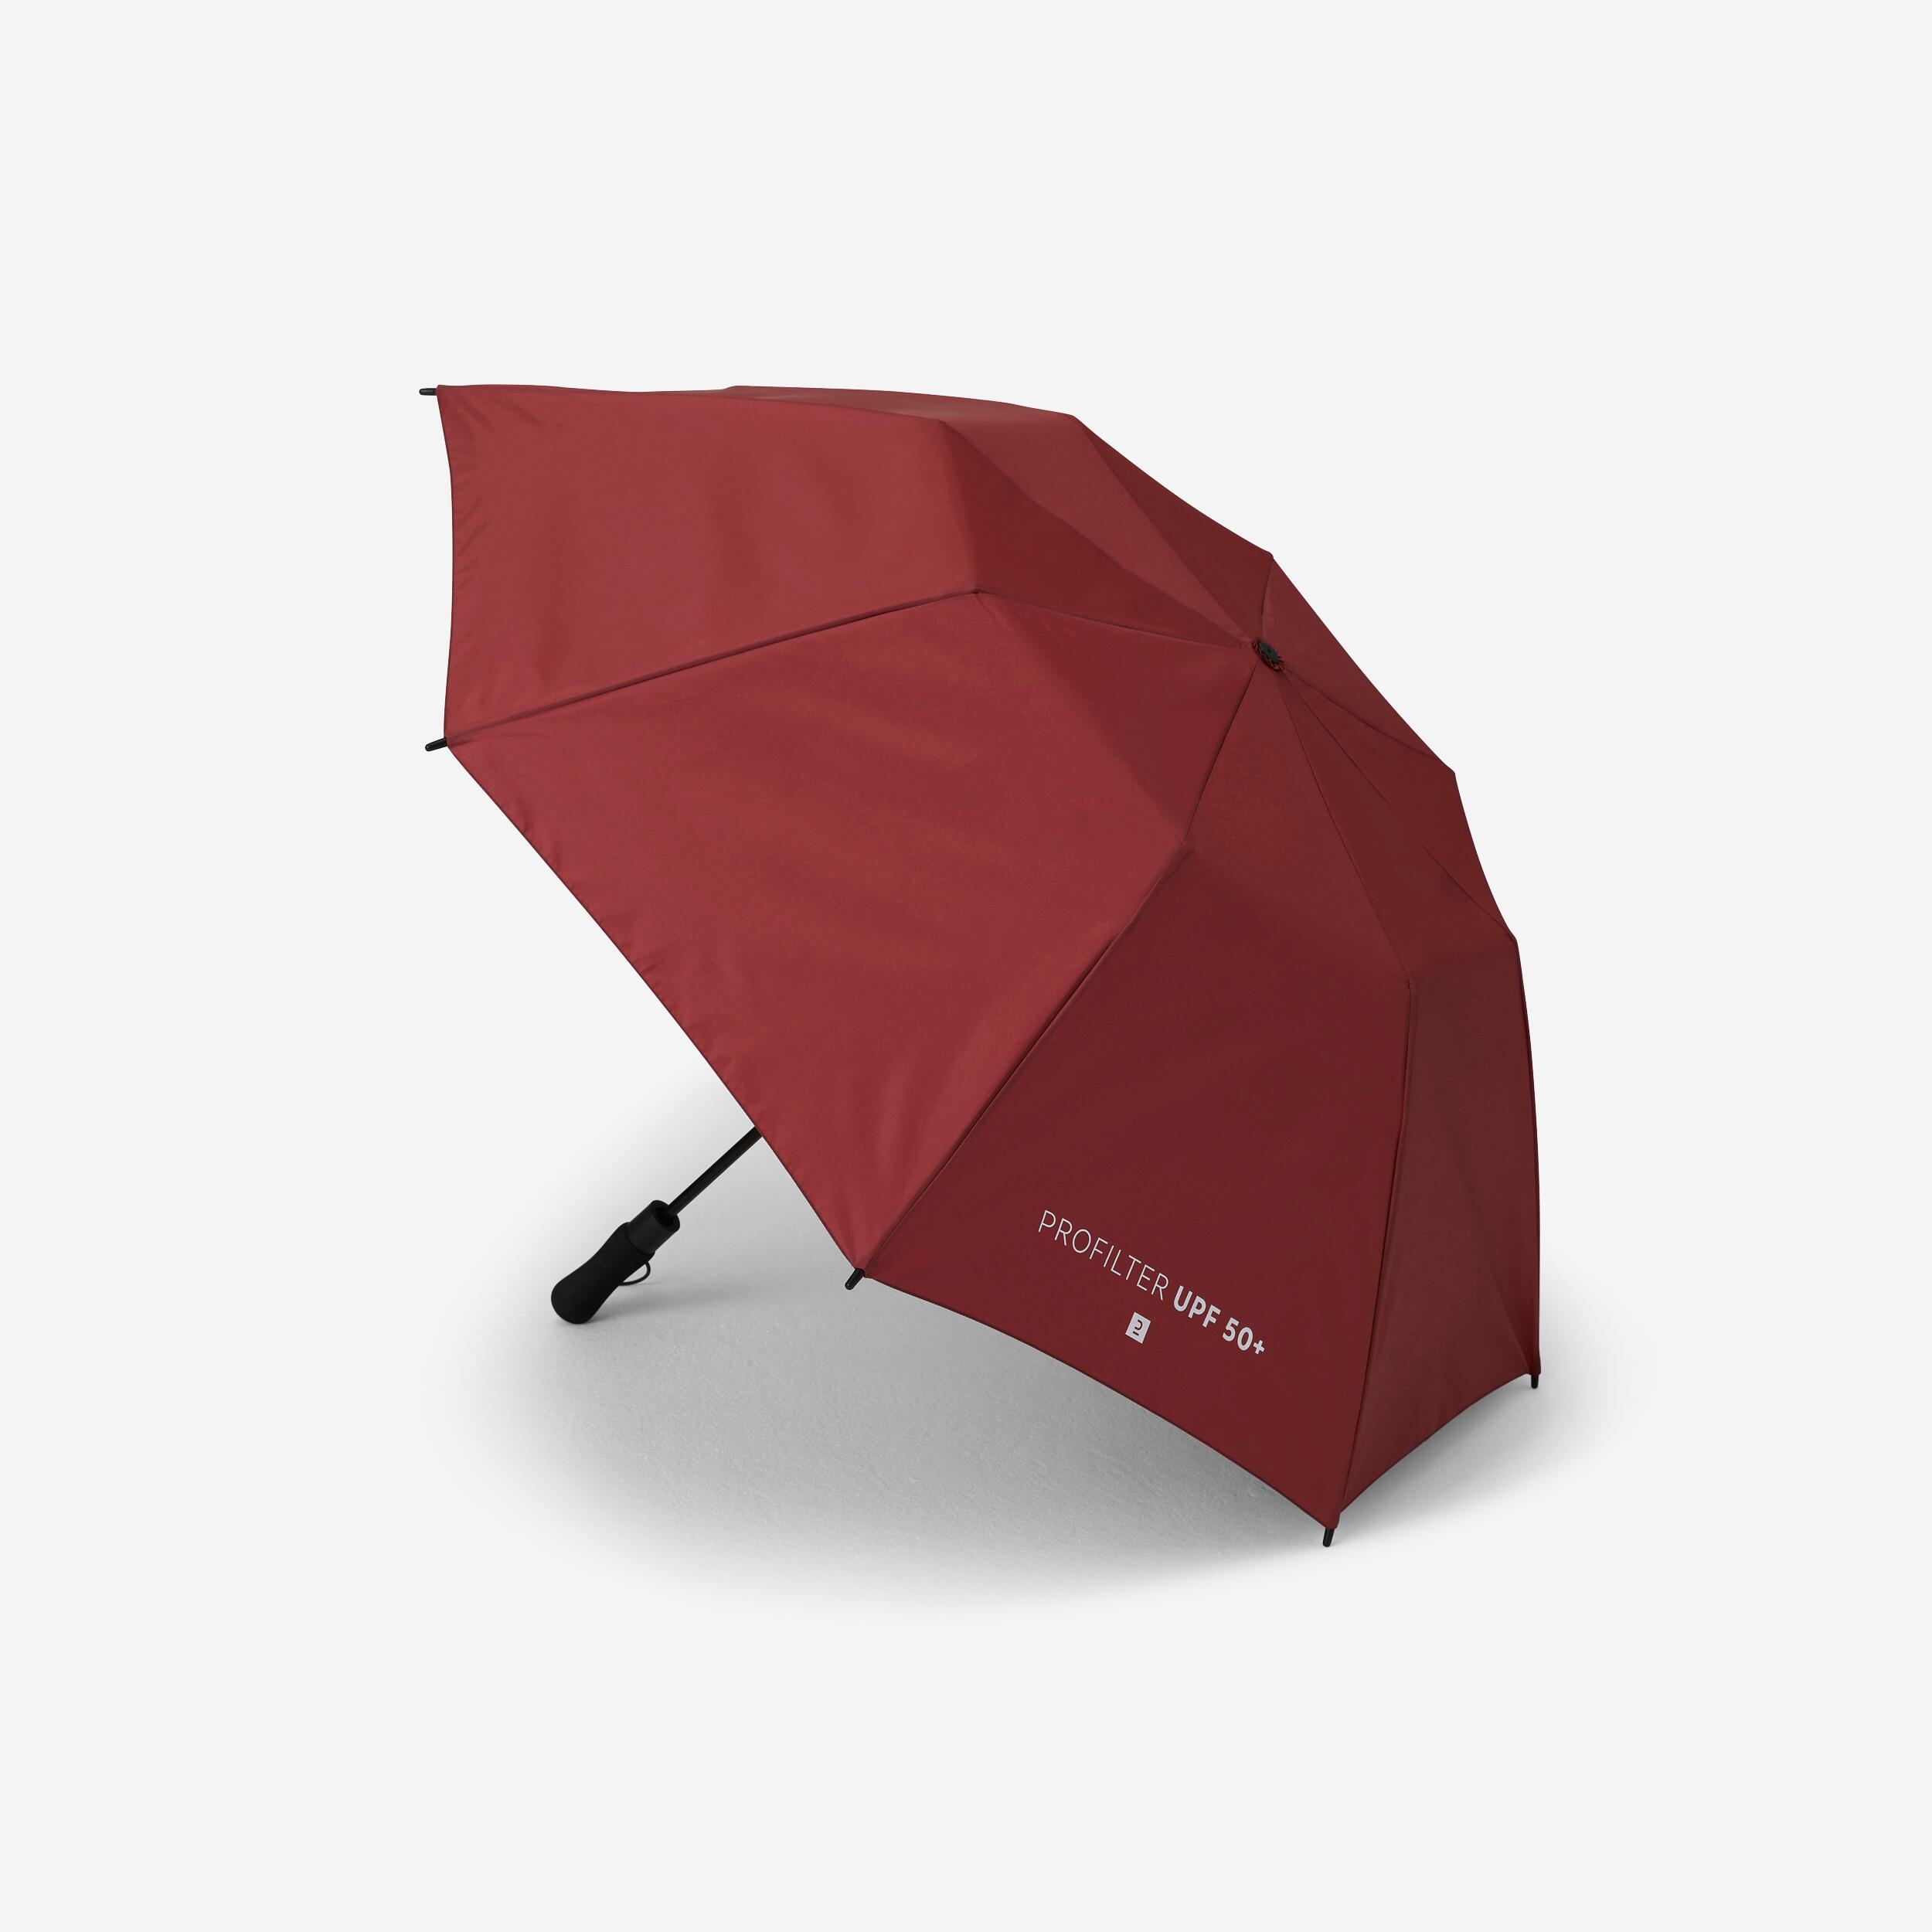 parapluie small - profilter bordeaux - decathlon